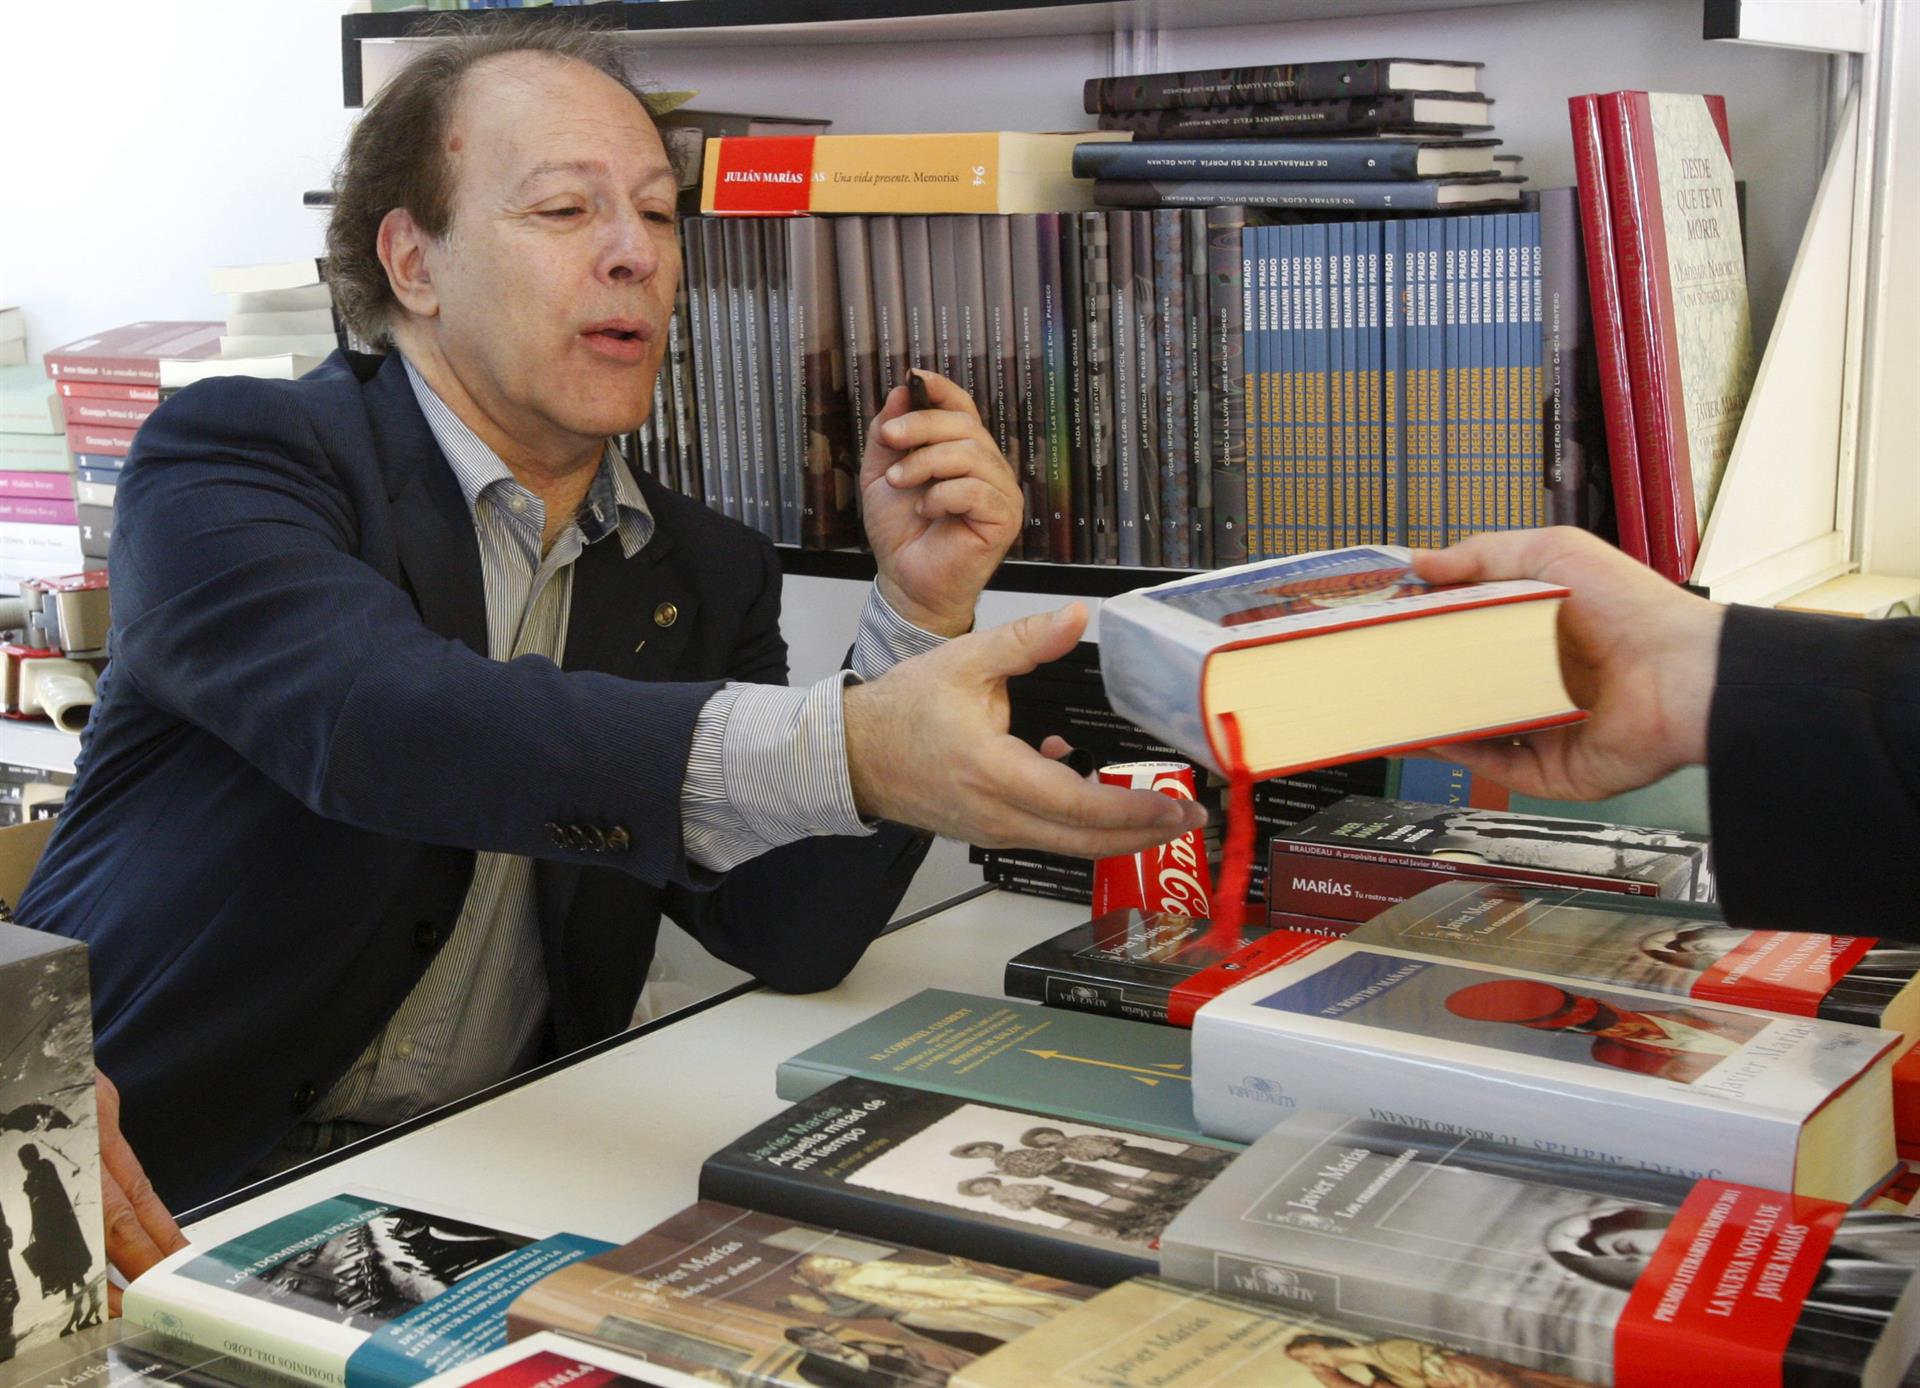 Imagen de archivo del escritor madrileño Javier Marías en la Feria del Libro de Madrid. EFE/Mondelo
